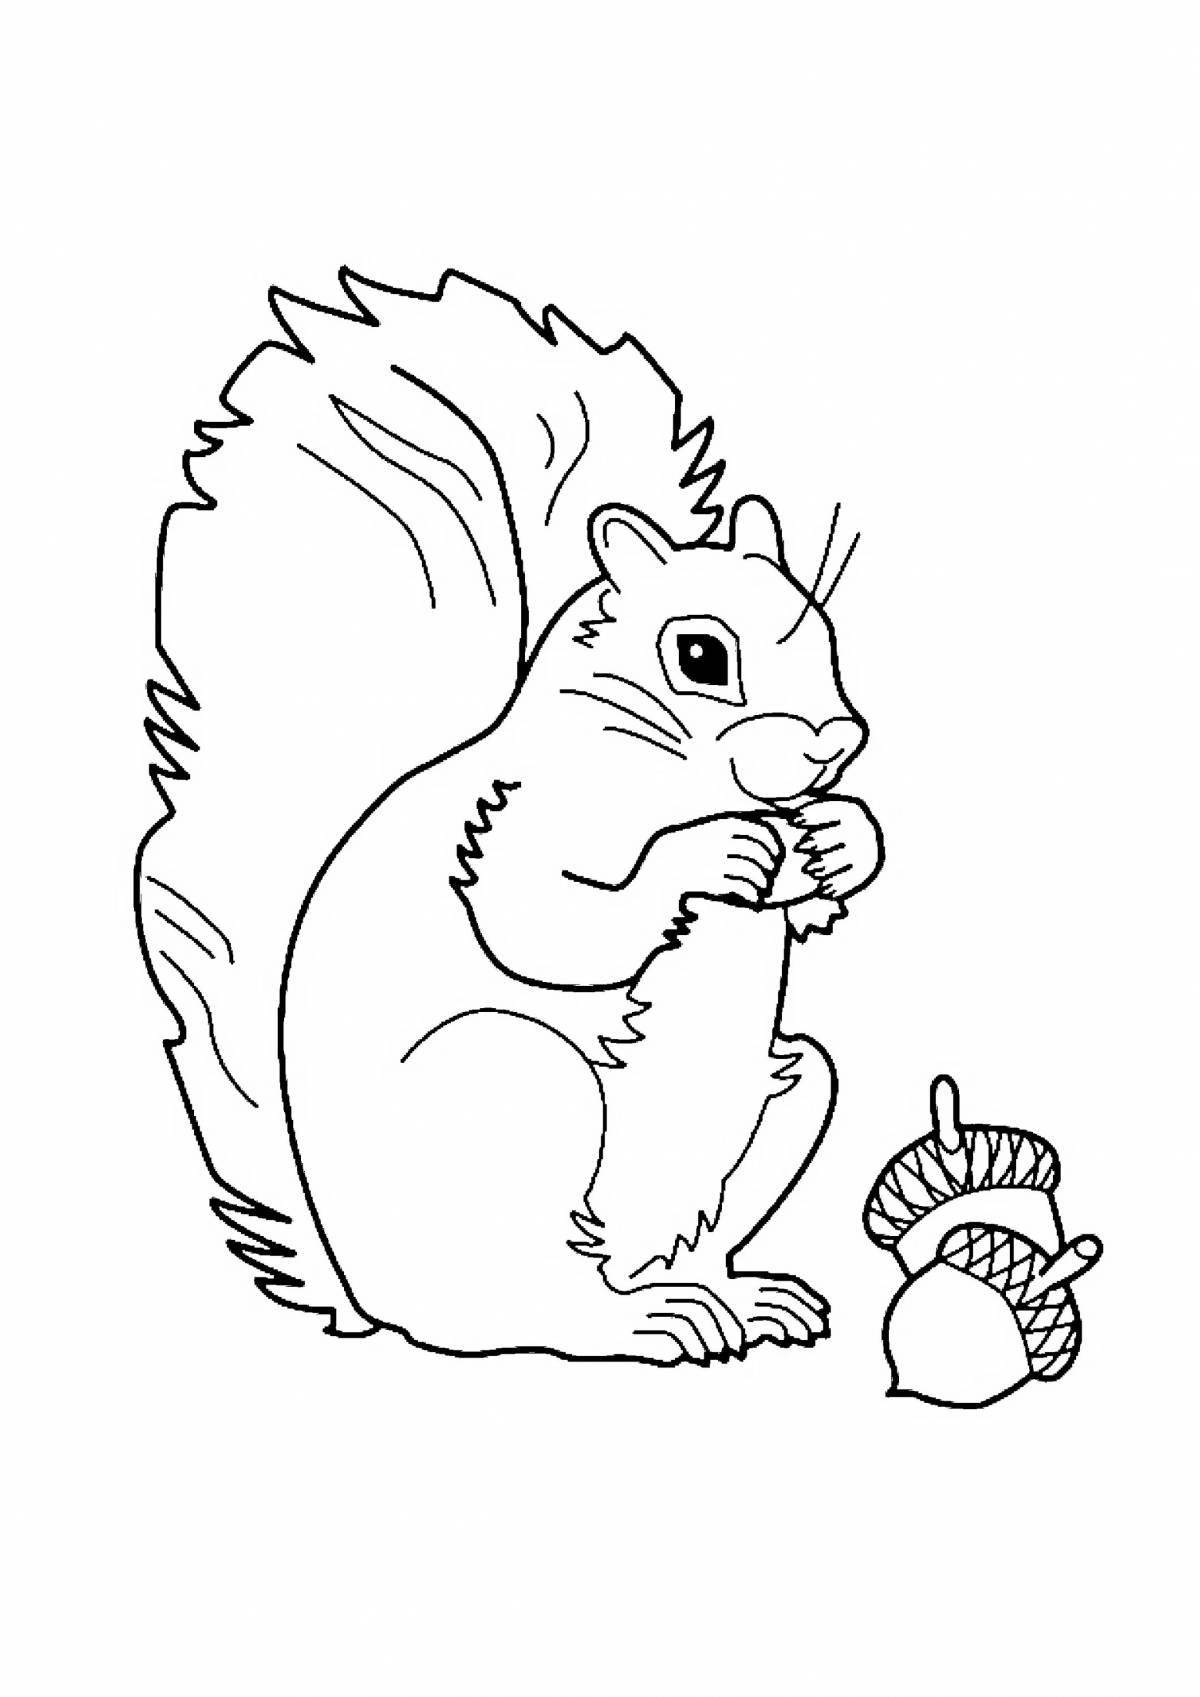 Coloring book smart squirrel